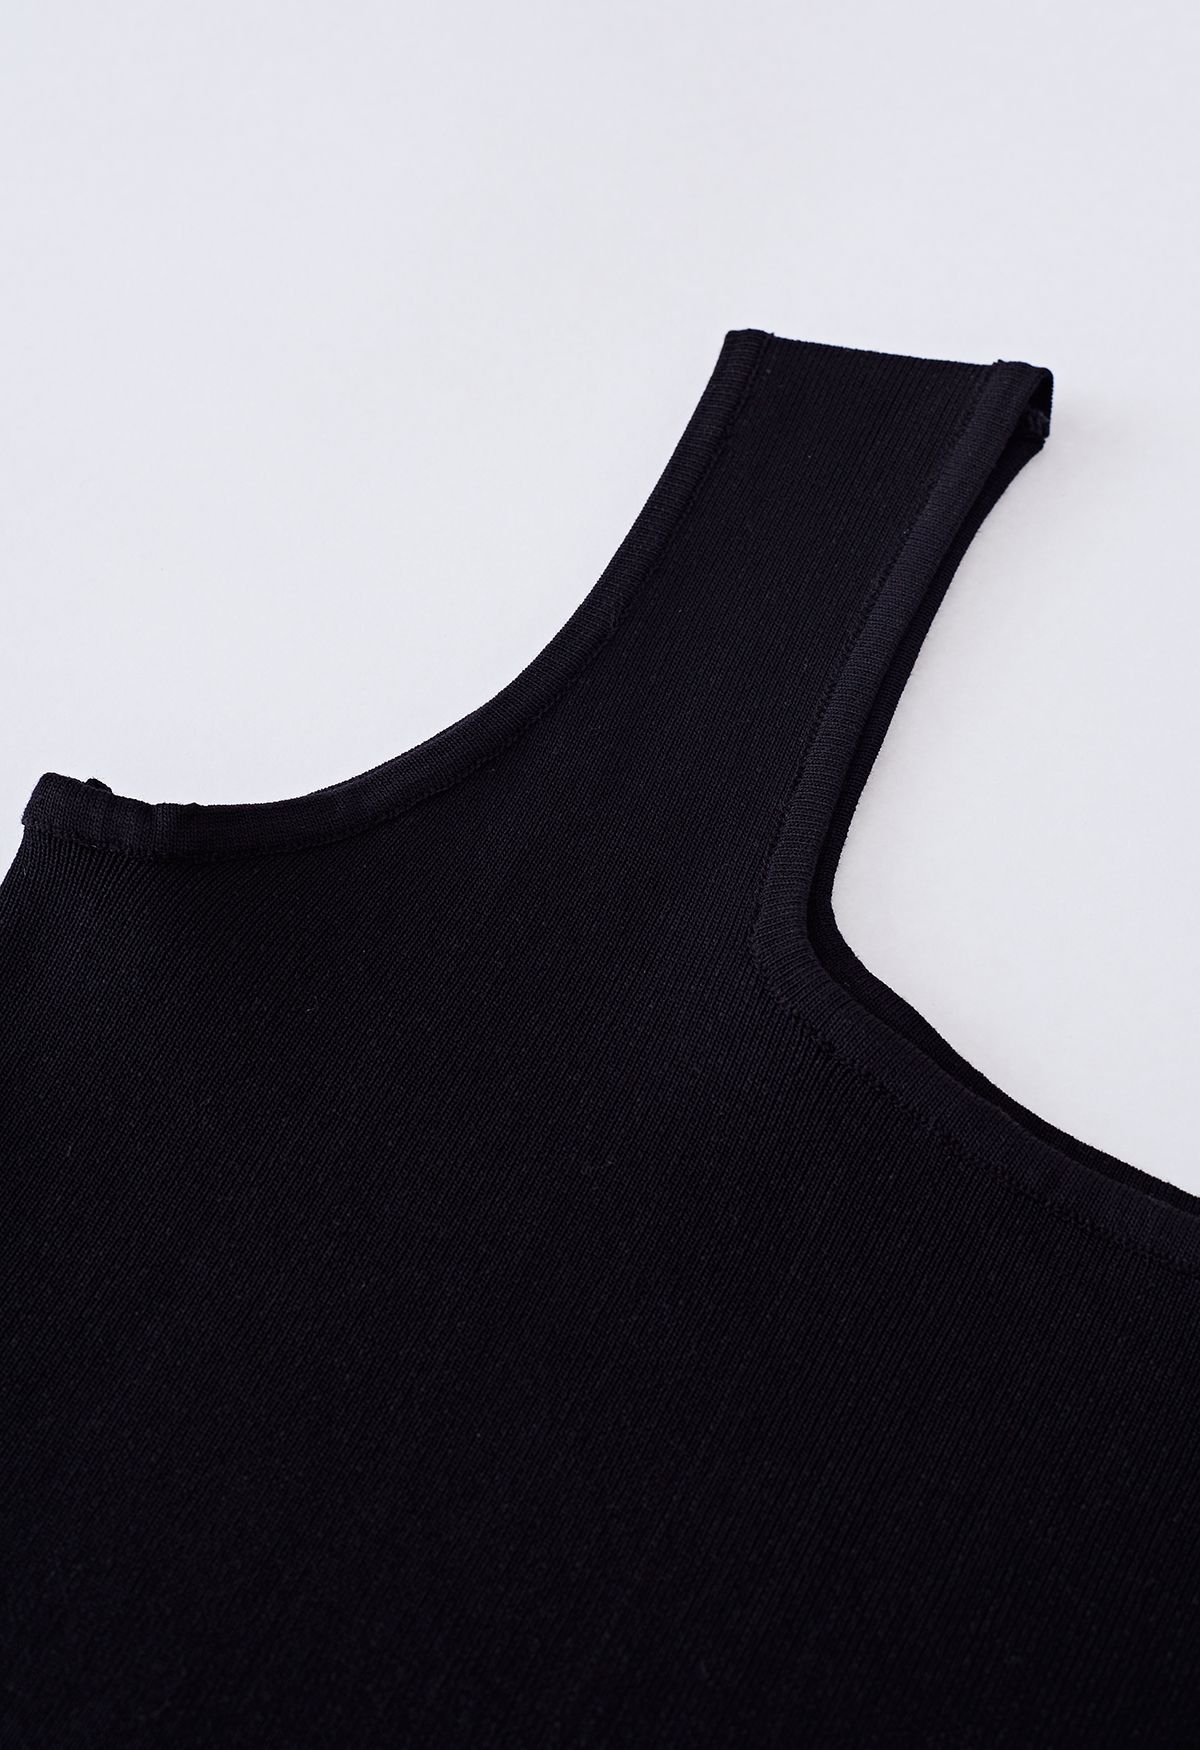 Camiseta sin mangas de punto con cuello cuadrado elegante en negro